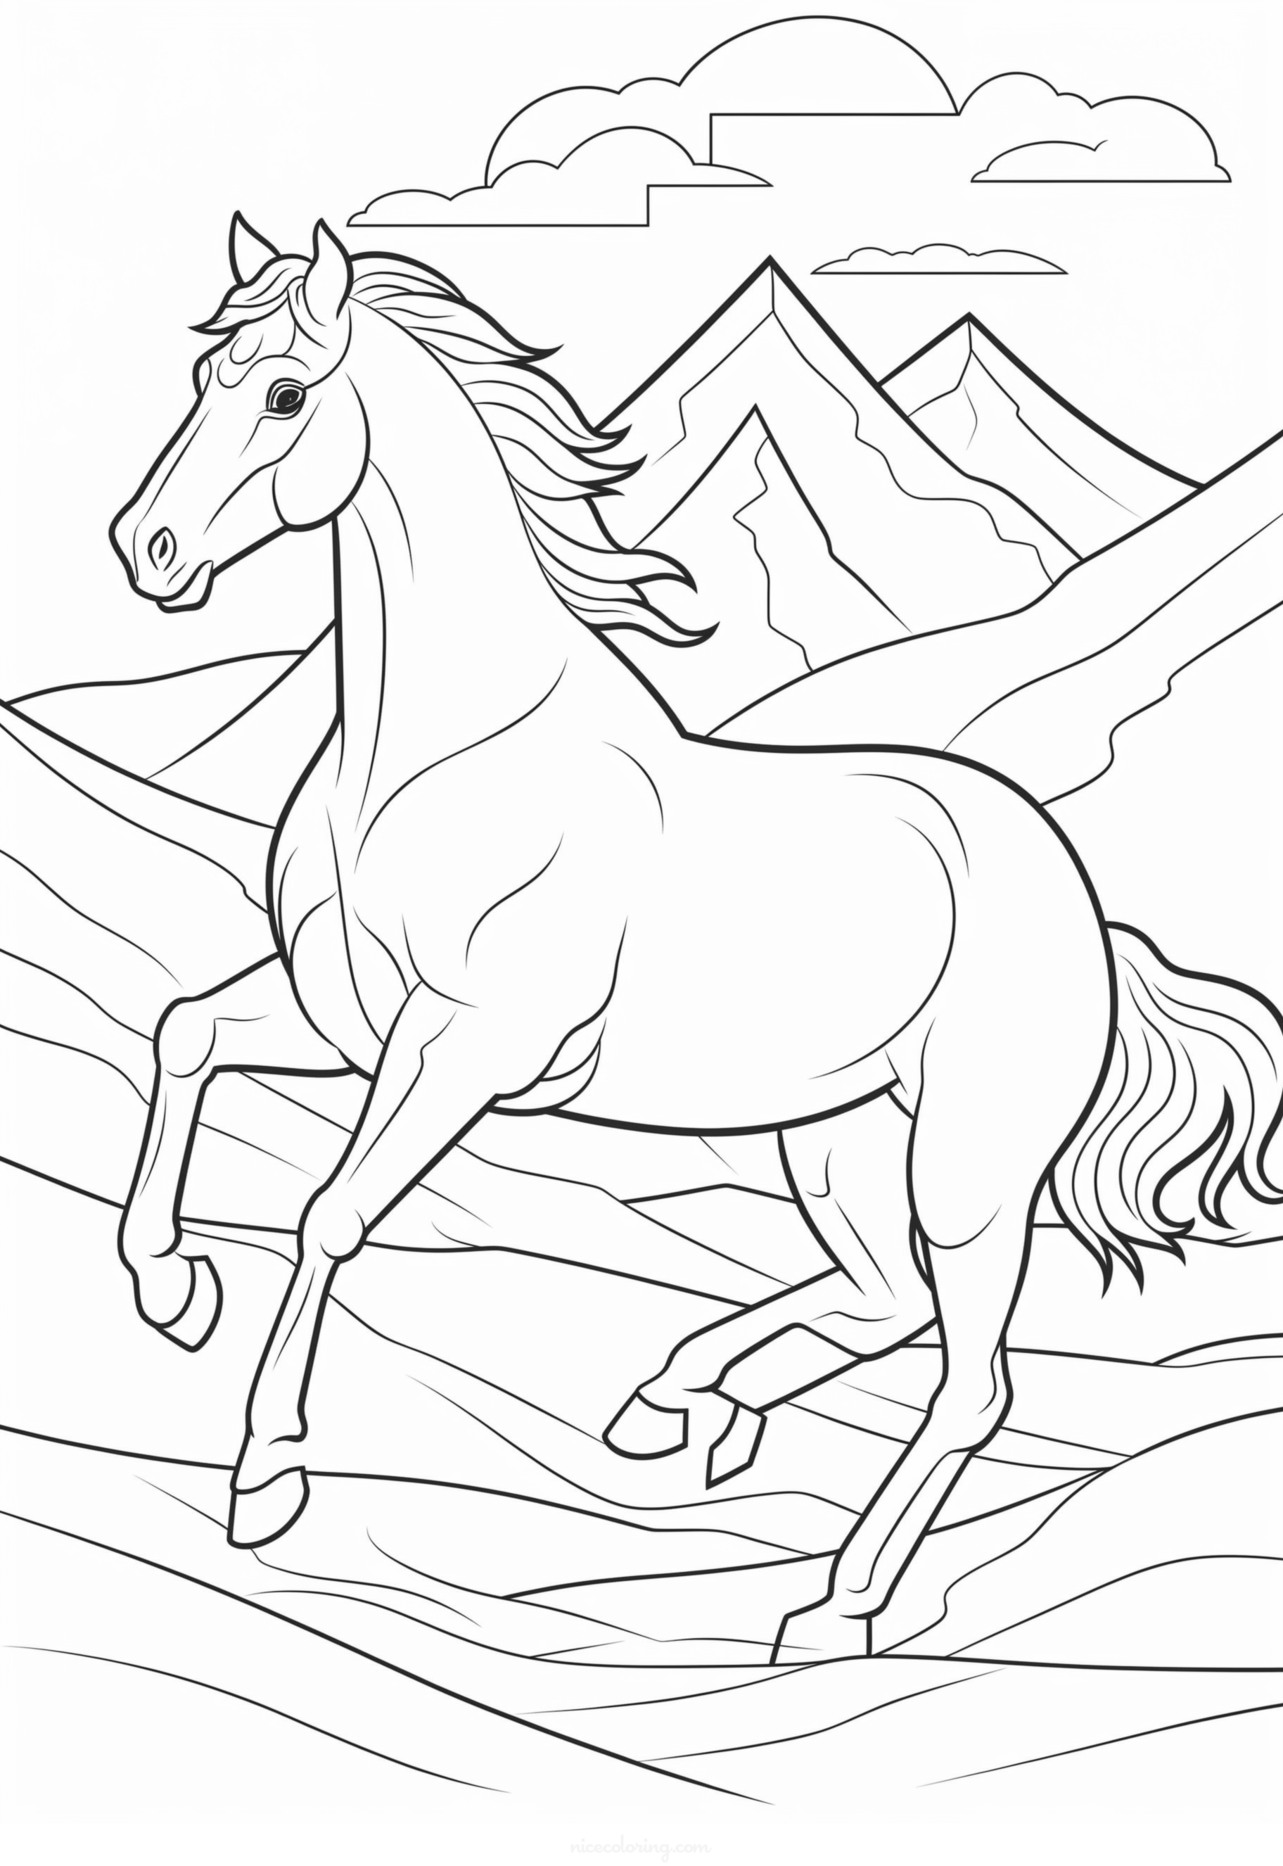 Imagen de un caballo con melena al viento para colorear